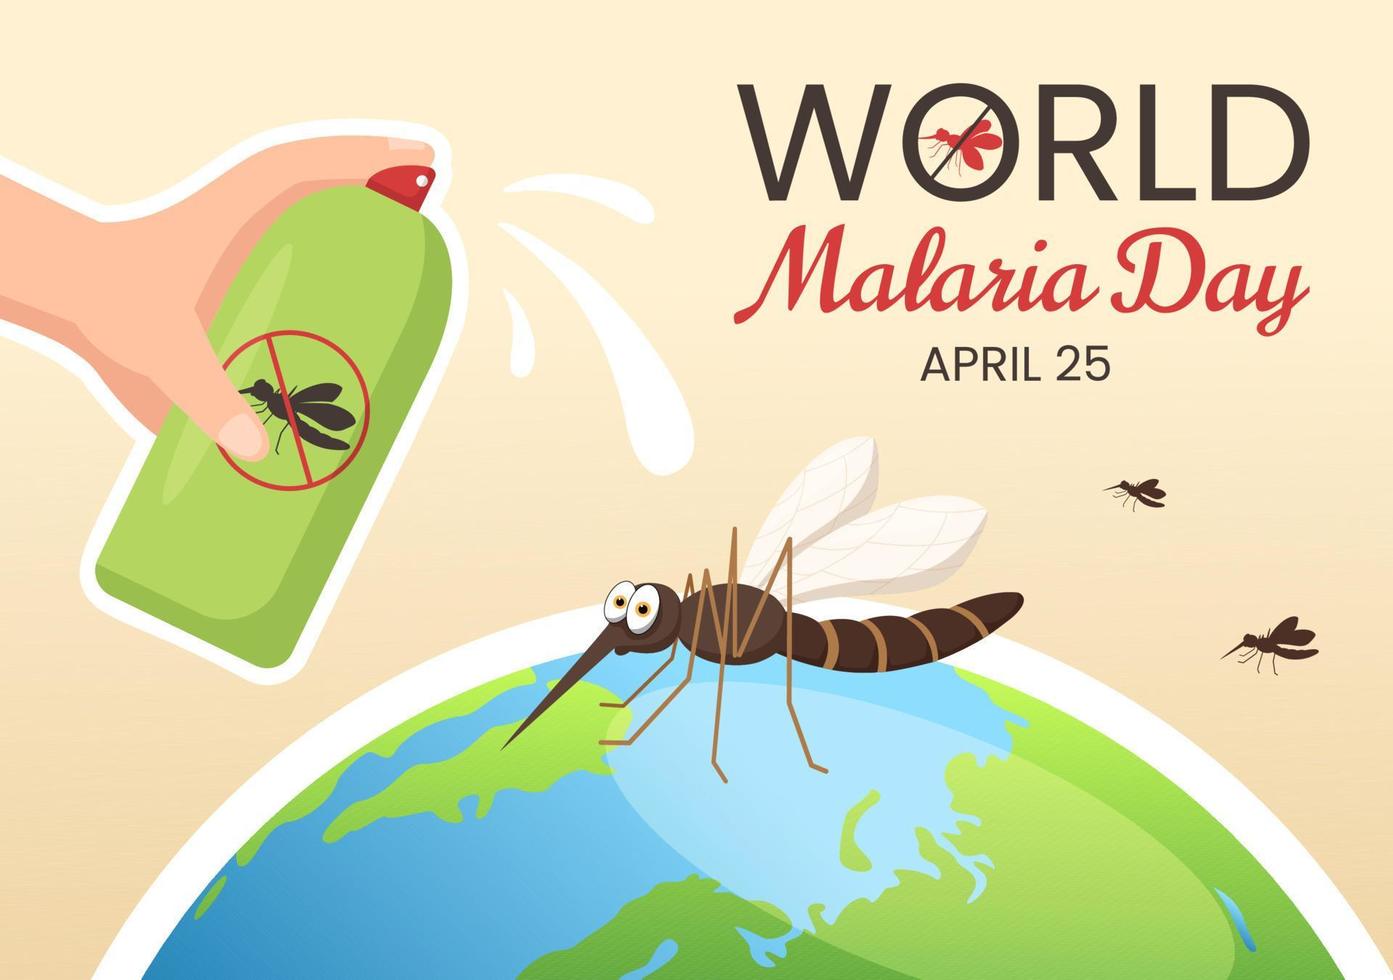 weltmalariatag am 25. april illustration mit vor mücken geschützter erde in flacher karikaturhand gezeichnet für webbanner oder zielseitenvorlagen vektor